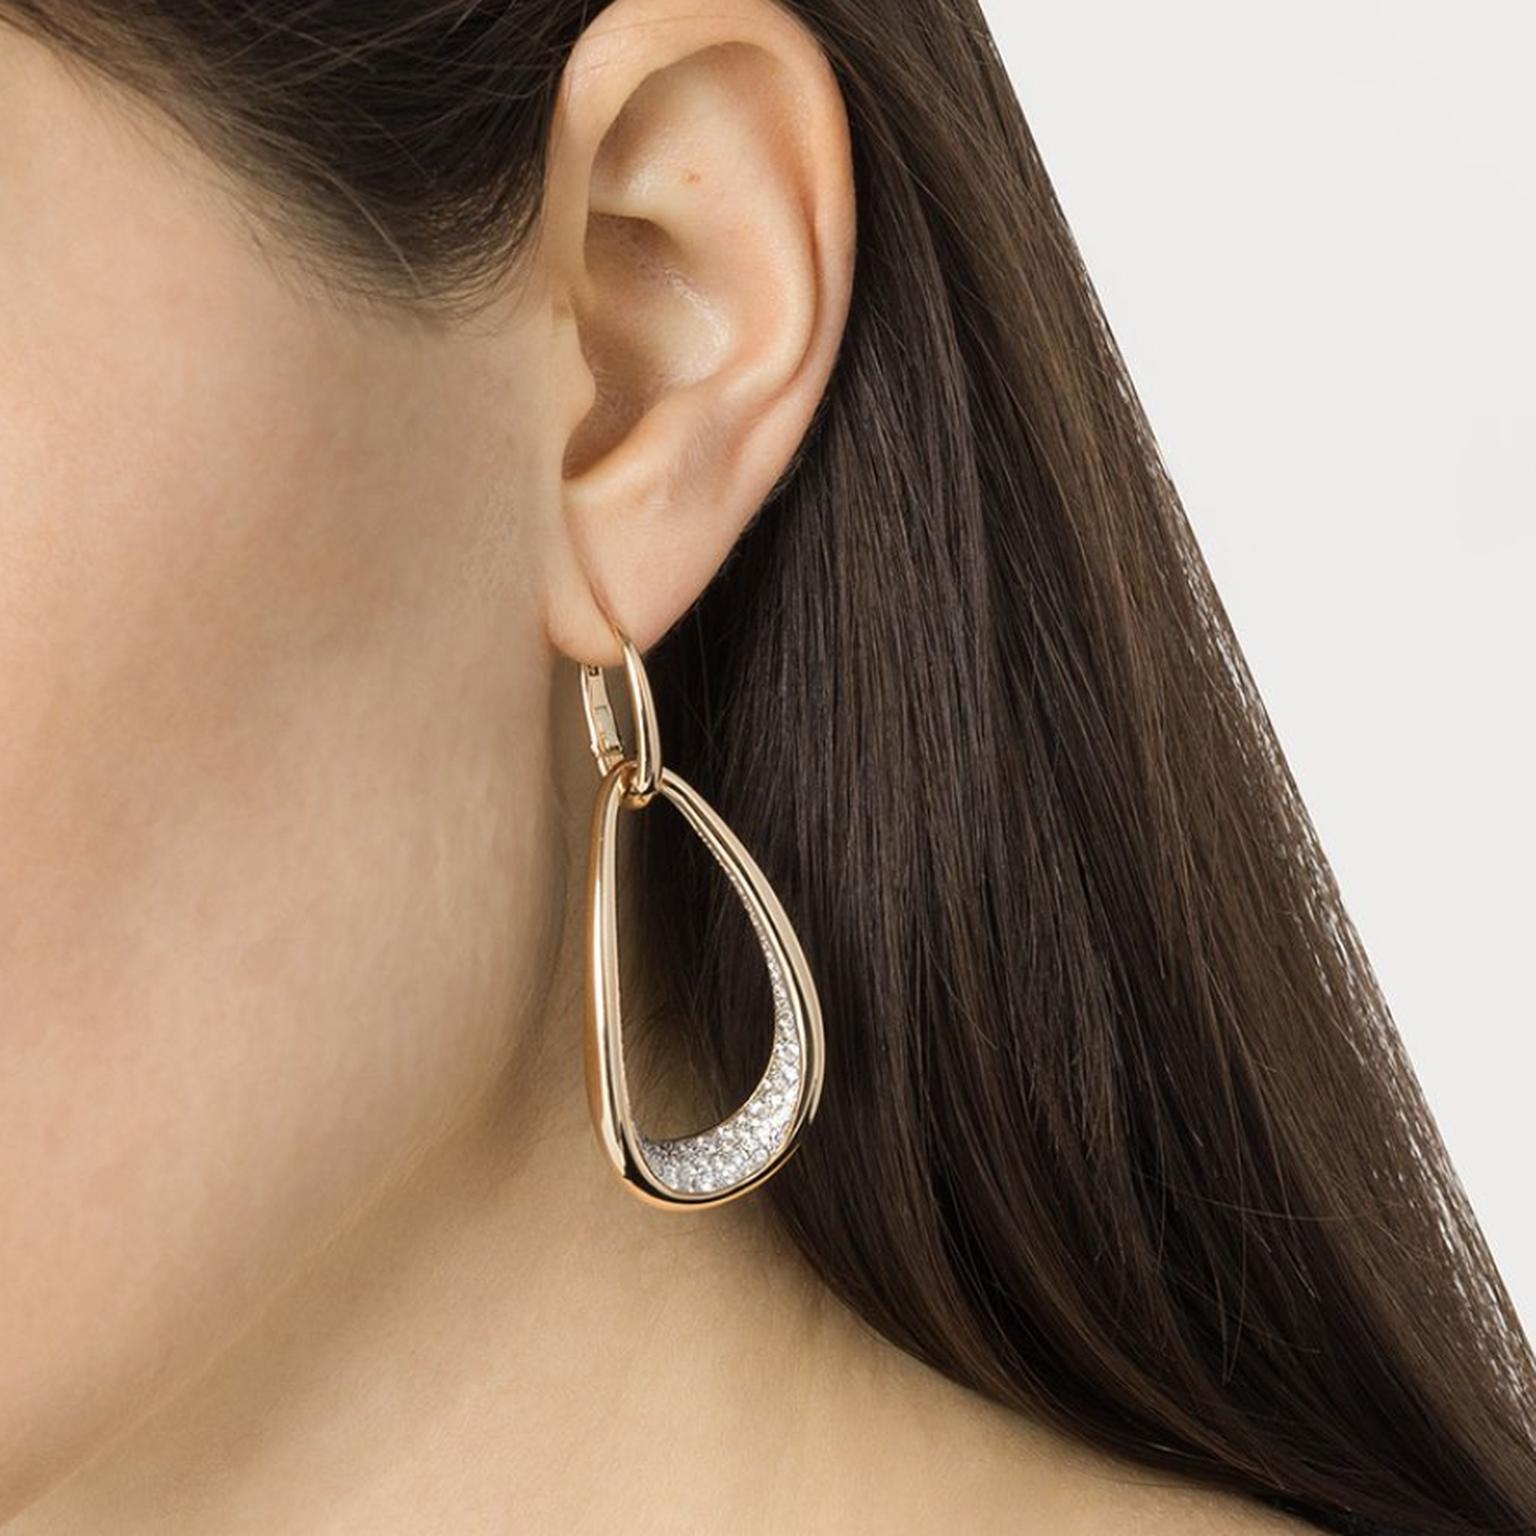 Fantina earrings by Pomellato on model